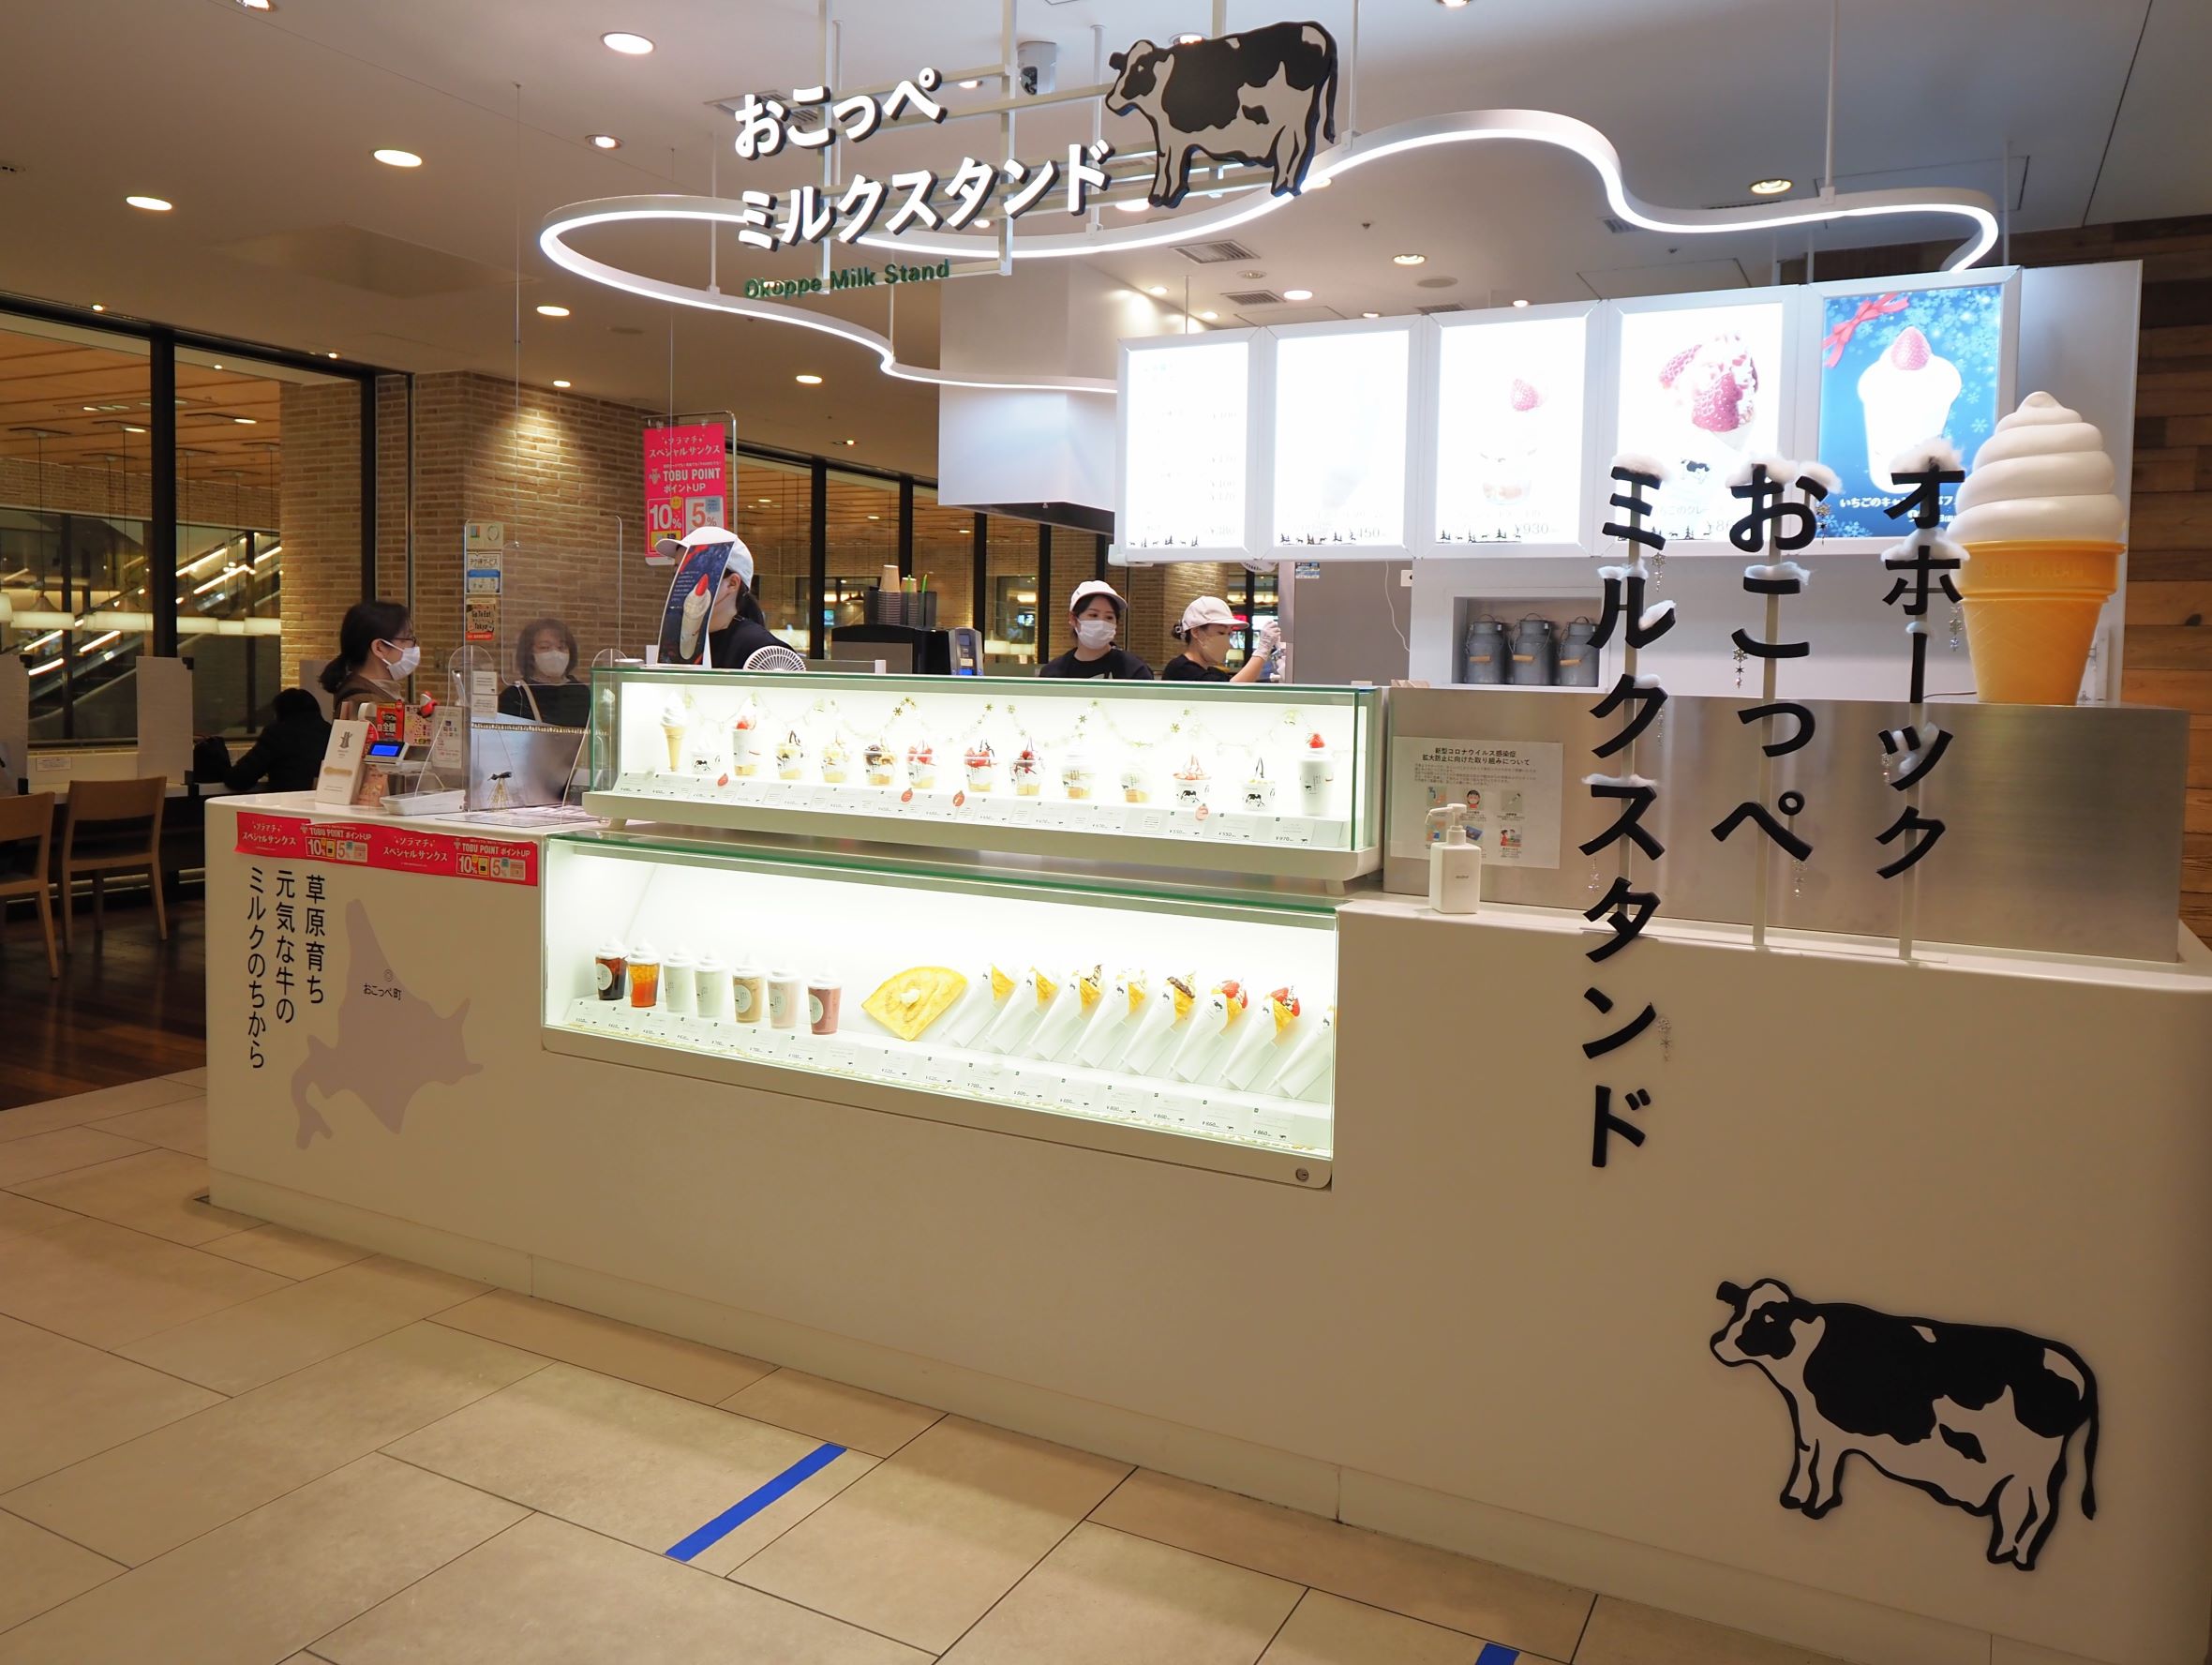 東京スカイツリーのソラマチには、ノースプレインファームの姉妹店「おこっぺミルクスタンド」があり、ソフトクリームや有機のむヨーグルト、有機牛乳が味わえる。